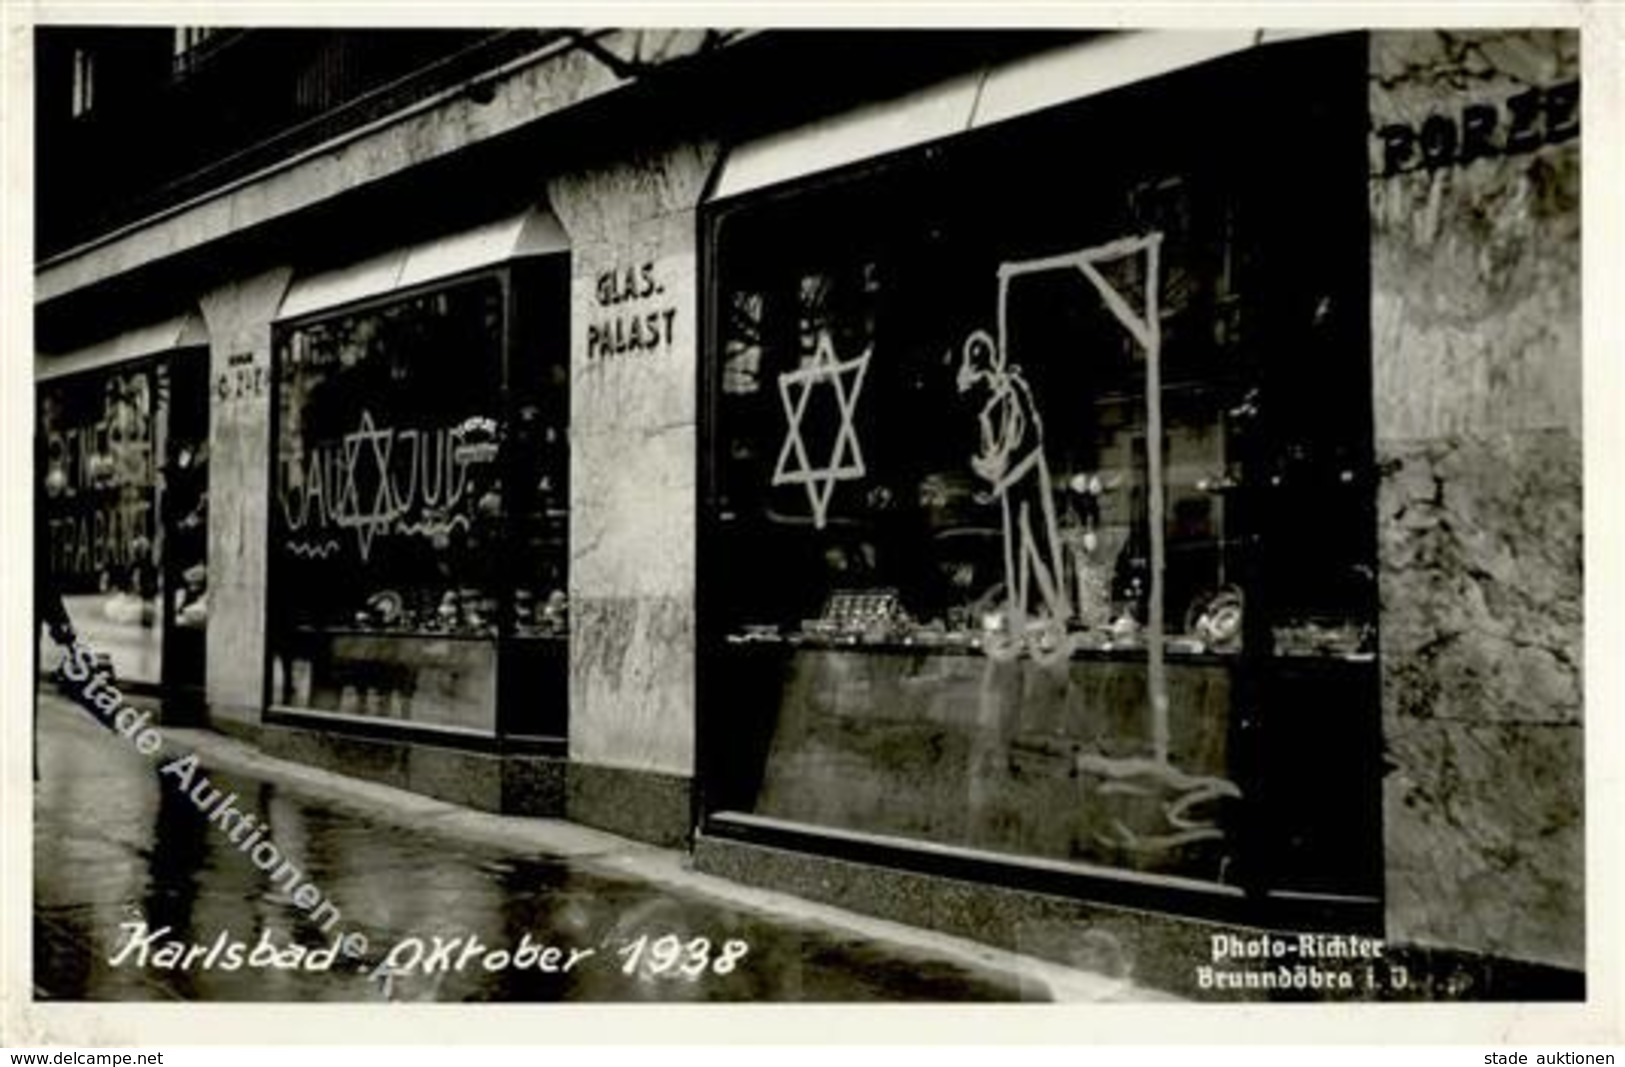 NS-JUDAIKA - KARLSBAD OKTOBER 1938 - KAUFT Nicht Bei Juden! Seltene Foto-Ak Mit Juden-Hetze An Schaufenster I - Judaika